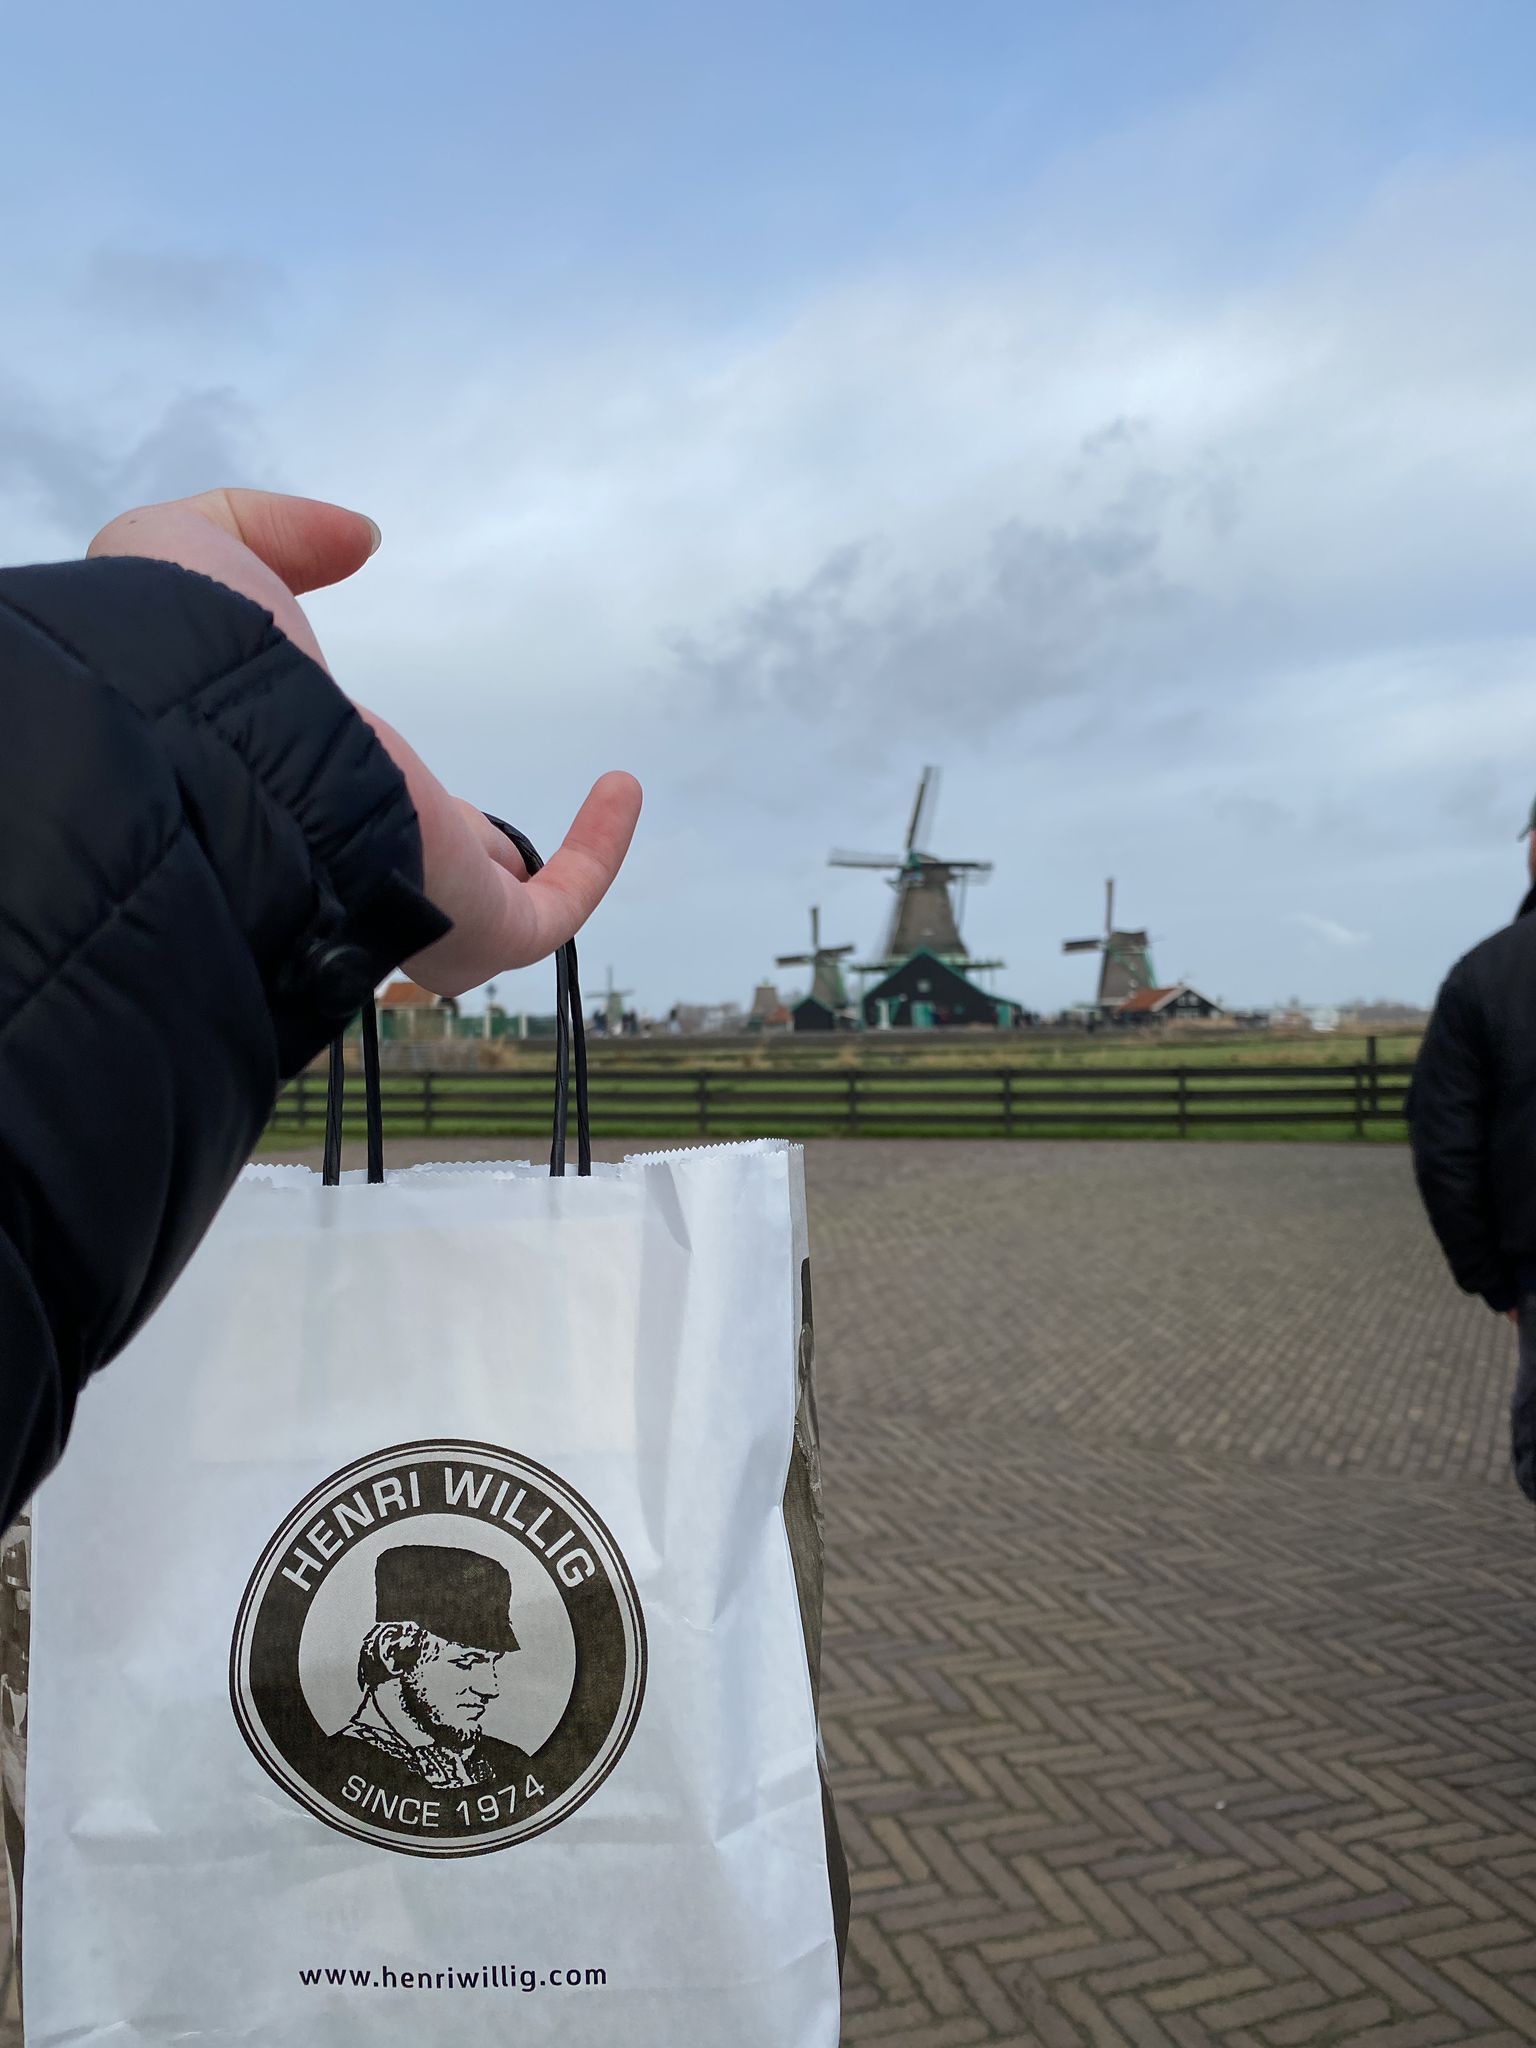 En Zaanse Schans puedes degustar quesos, comprarlos, y comértelos con unas increíbles vistas